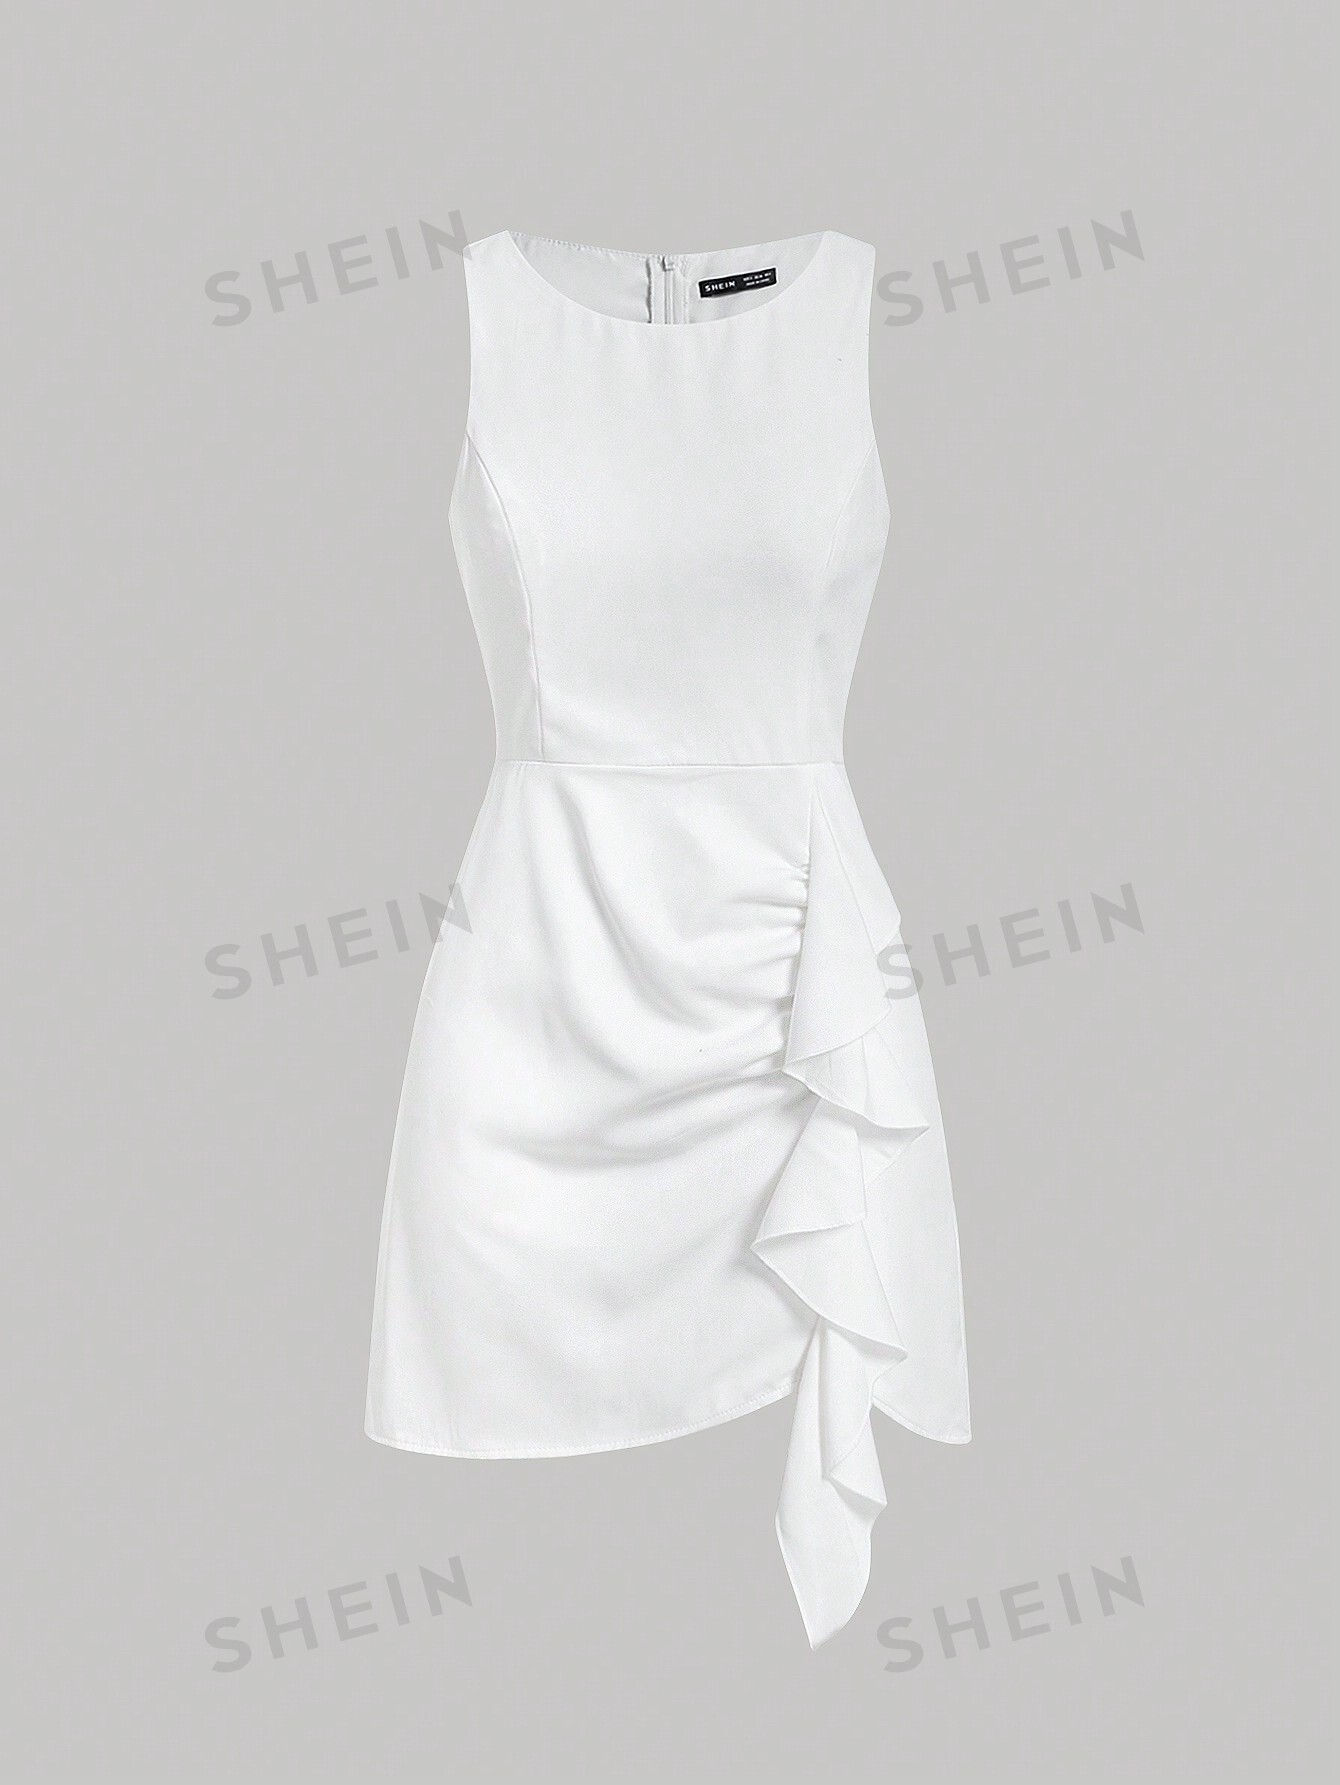 shein mod однотонное платье с гофрированной спиной и расклешенным подолом синий SHEIN MOD однотонное платье-жилет без рукавов с бретелькой на шее и рюшами, белый